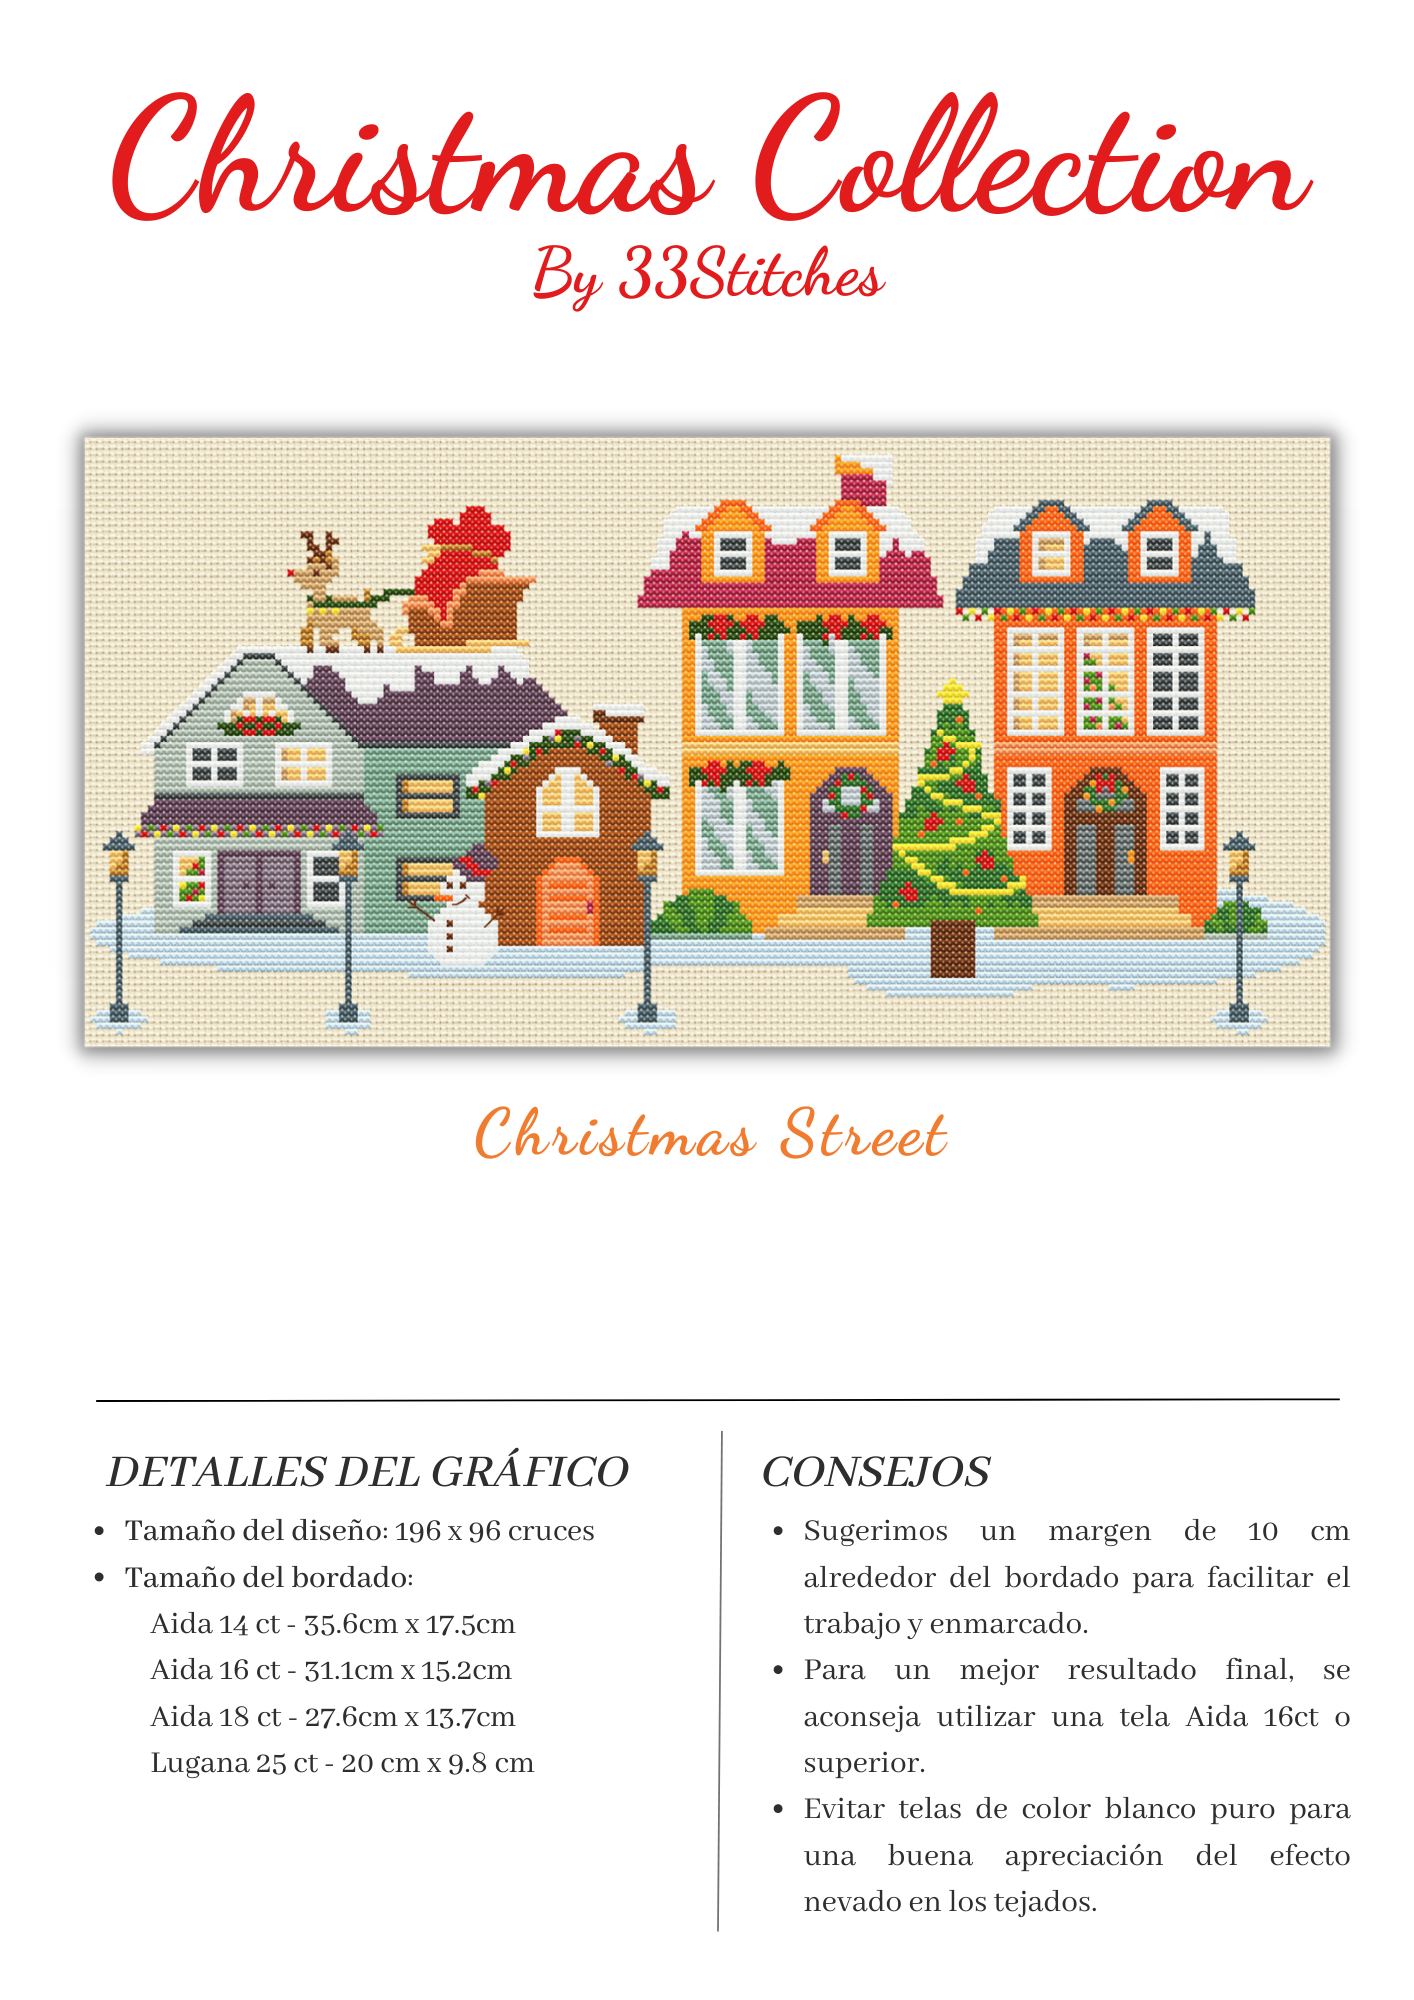 Información gráfico de punto de cruz 33Stitches calle navideña